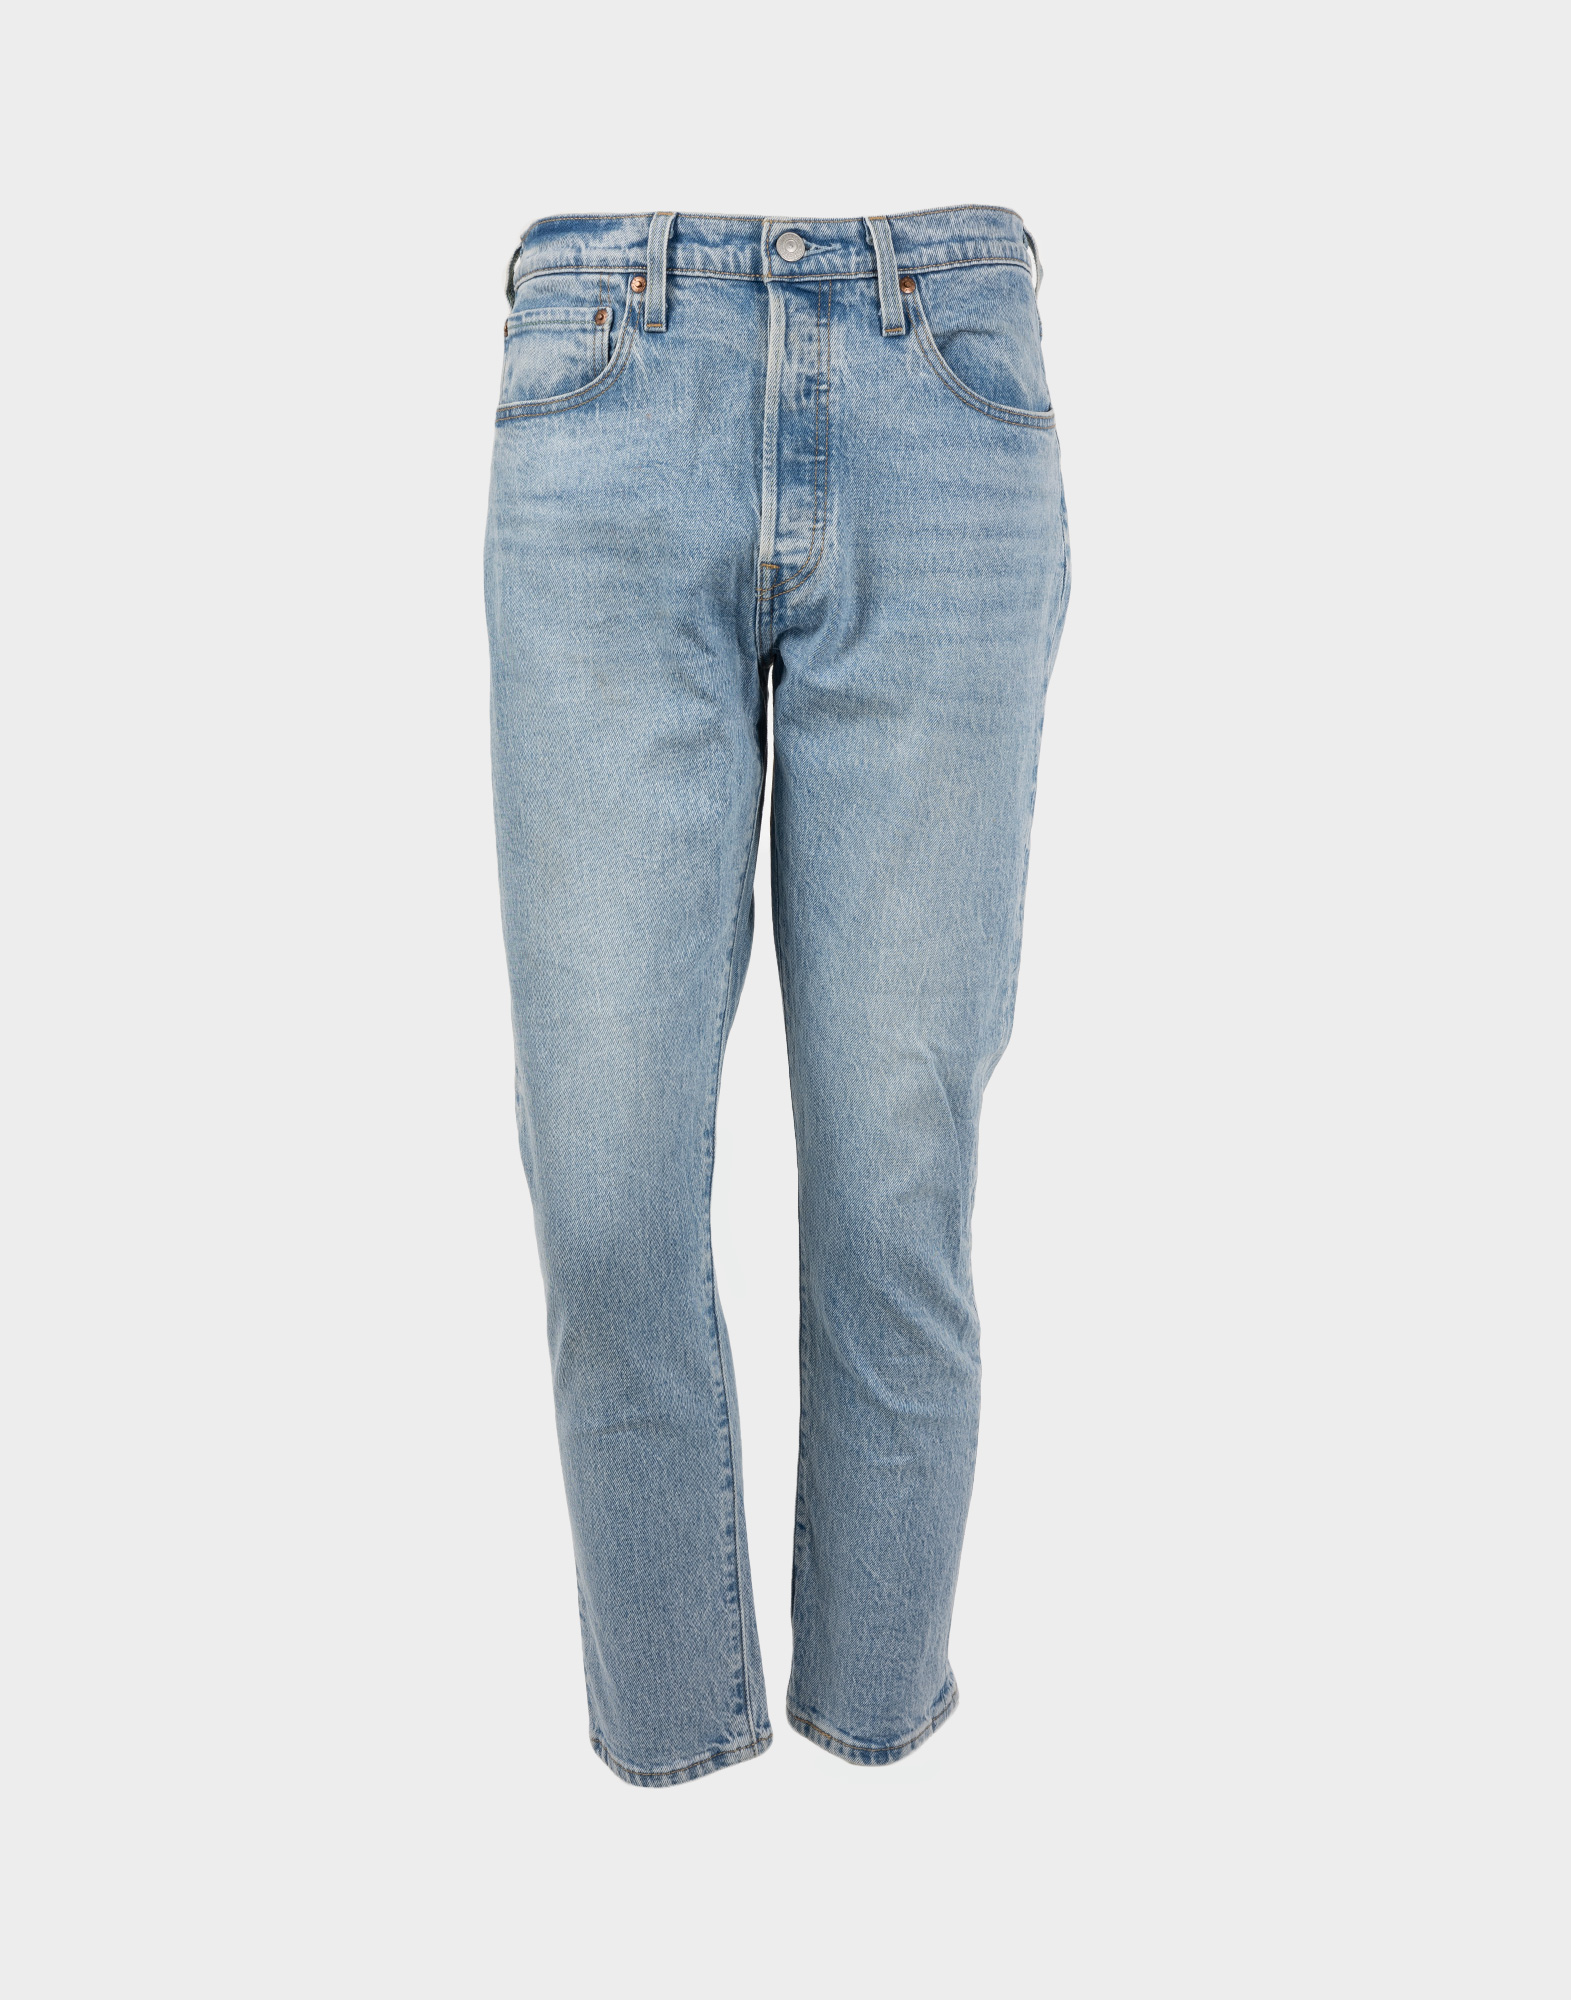 pantaloni jeans levis da uomo lavaggio chiaro modello 501